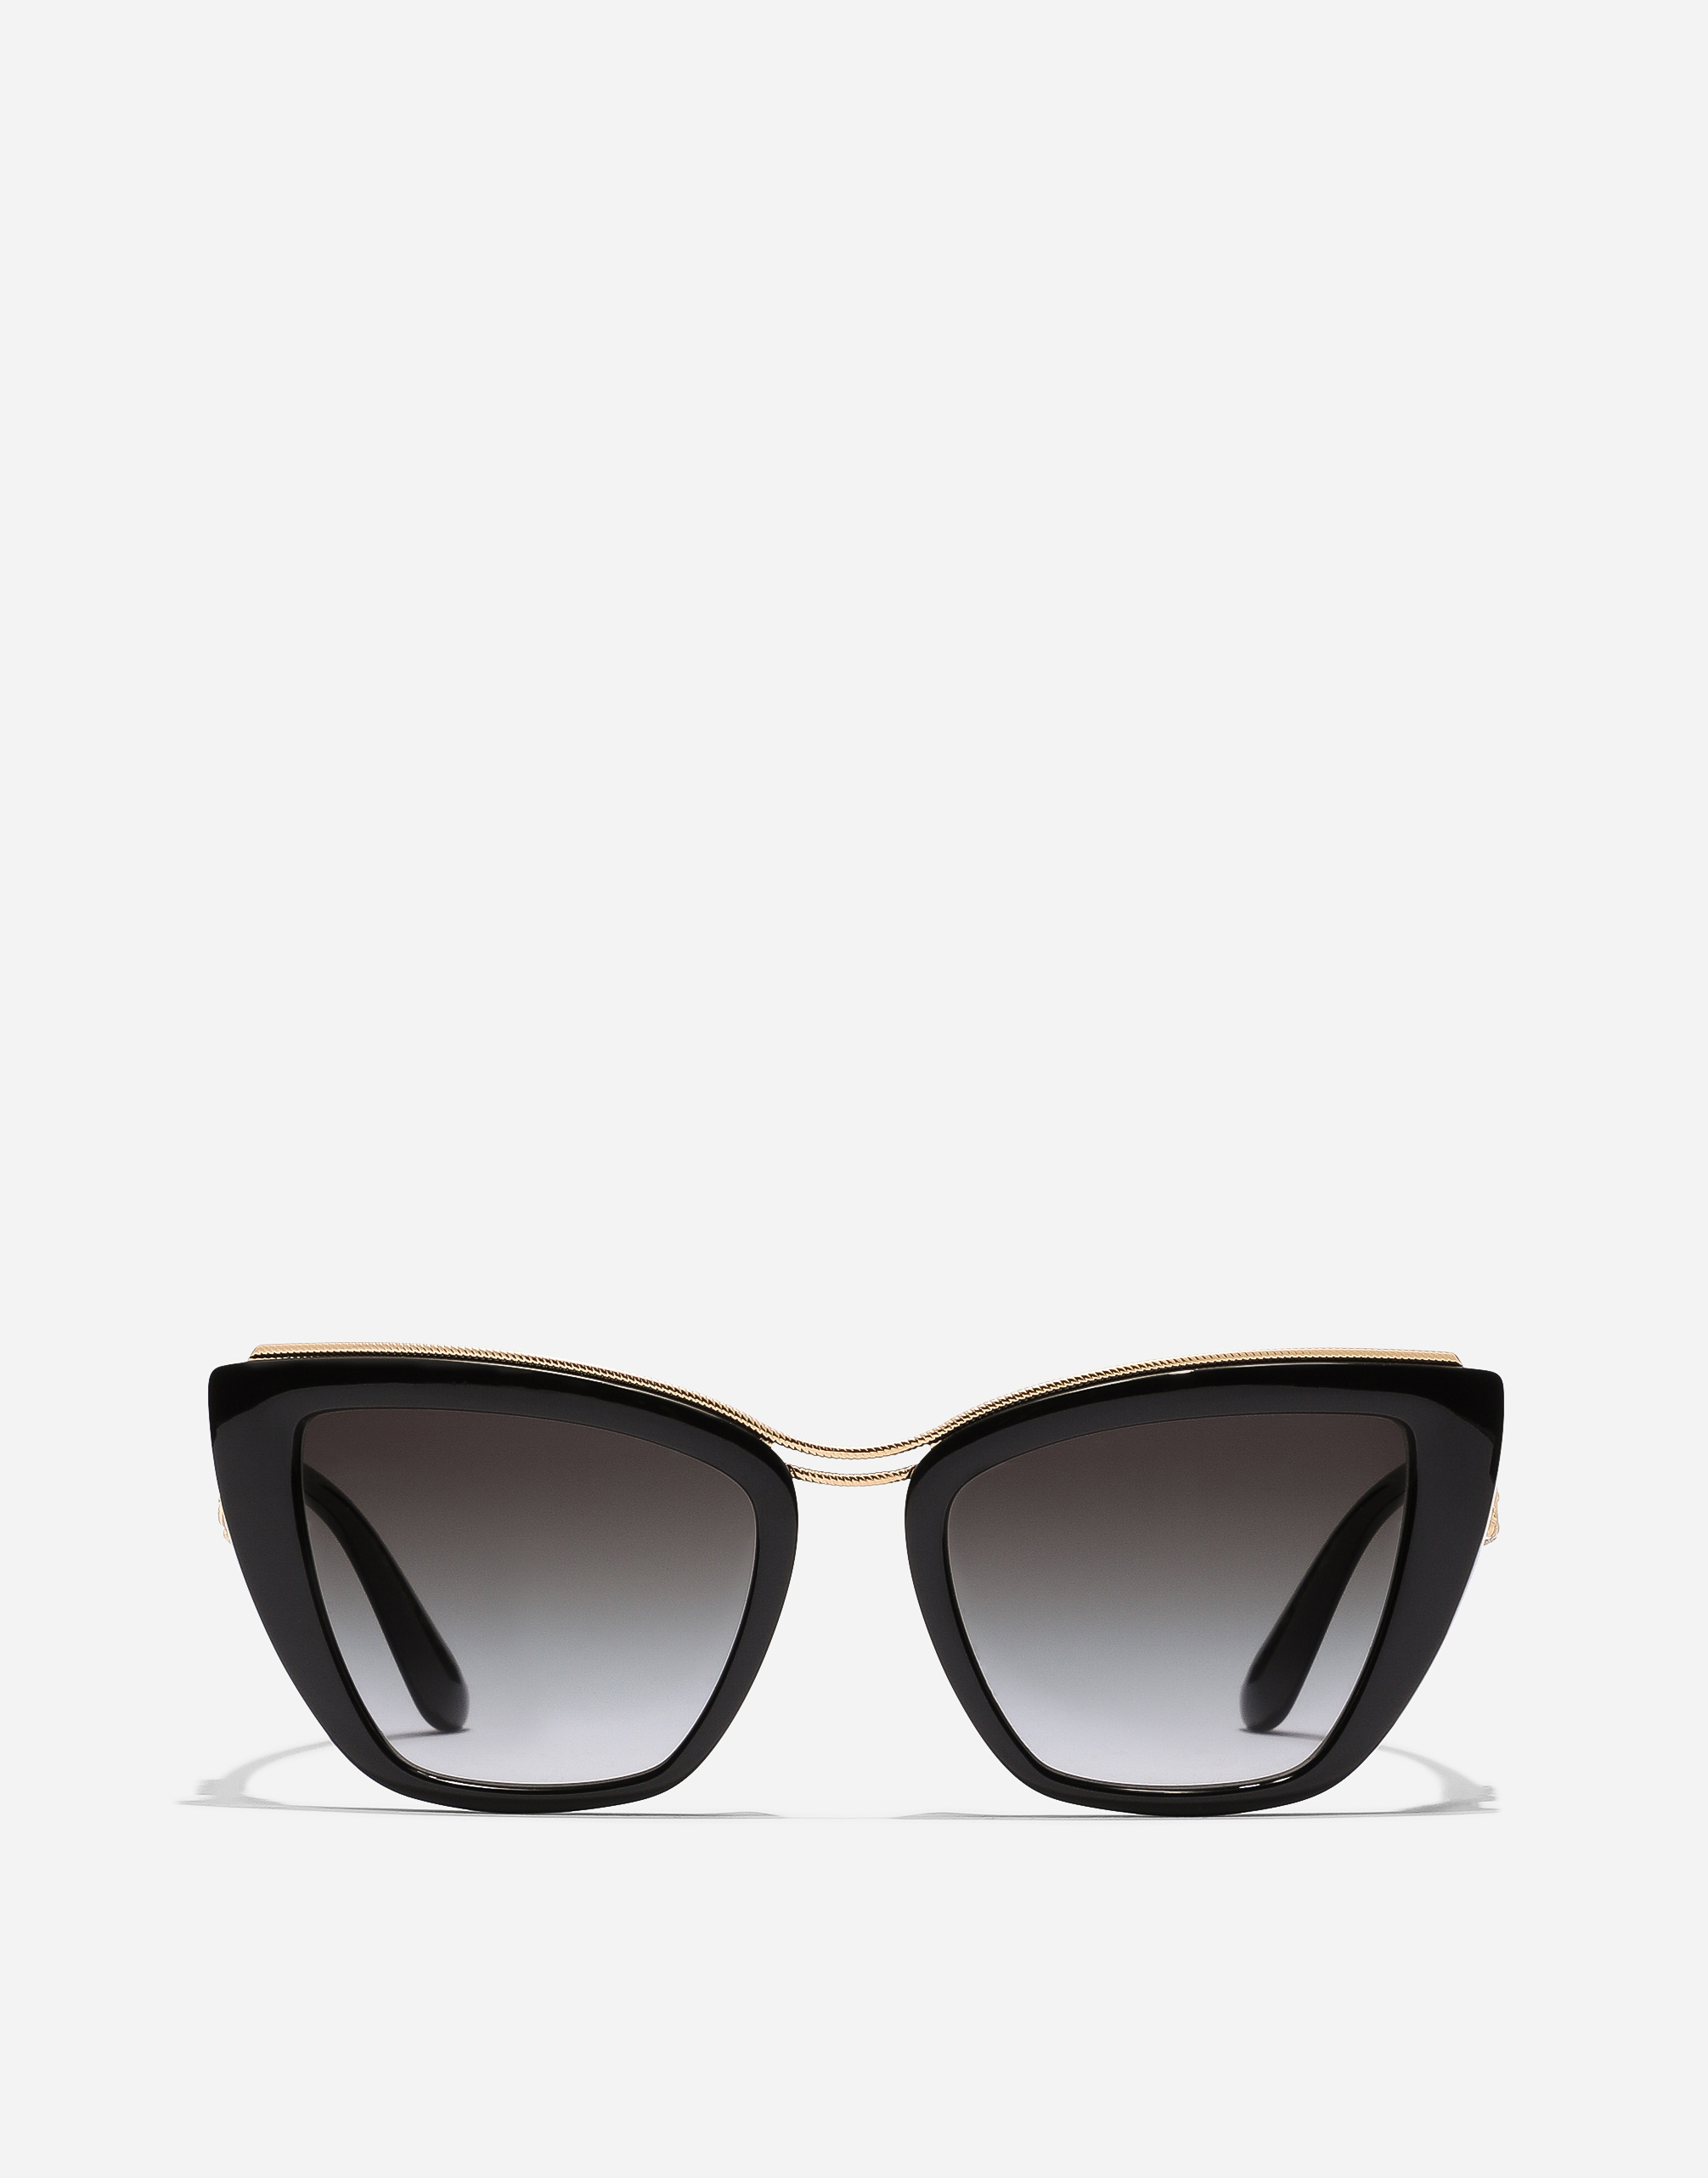 DG Amore sunglasses in Black